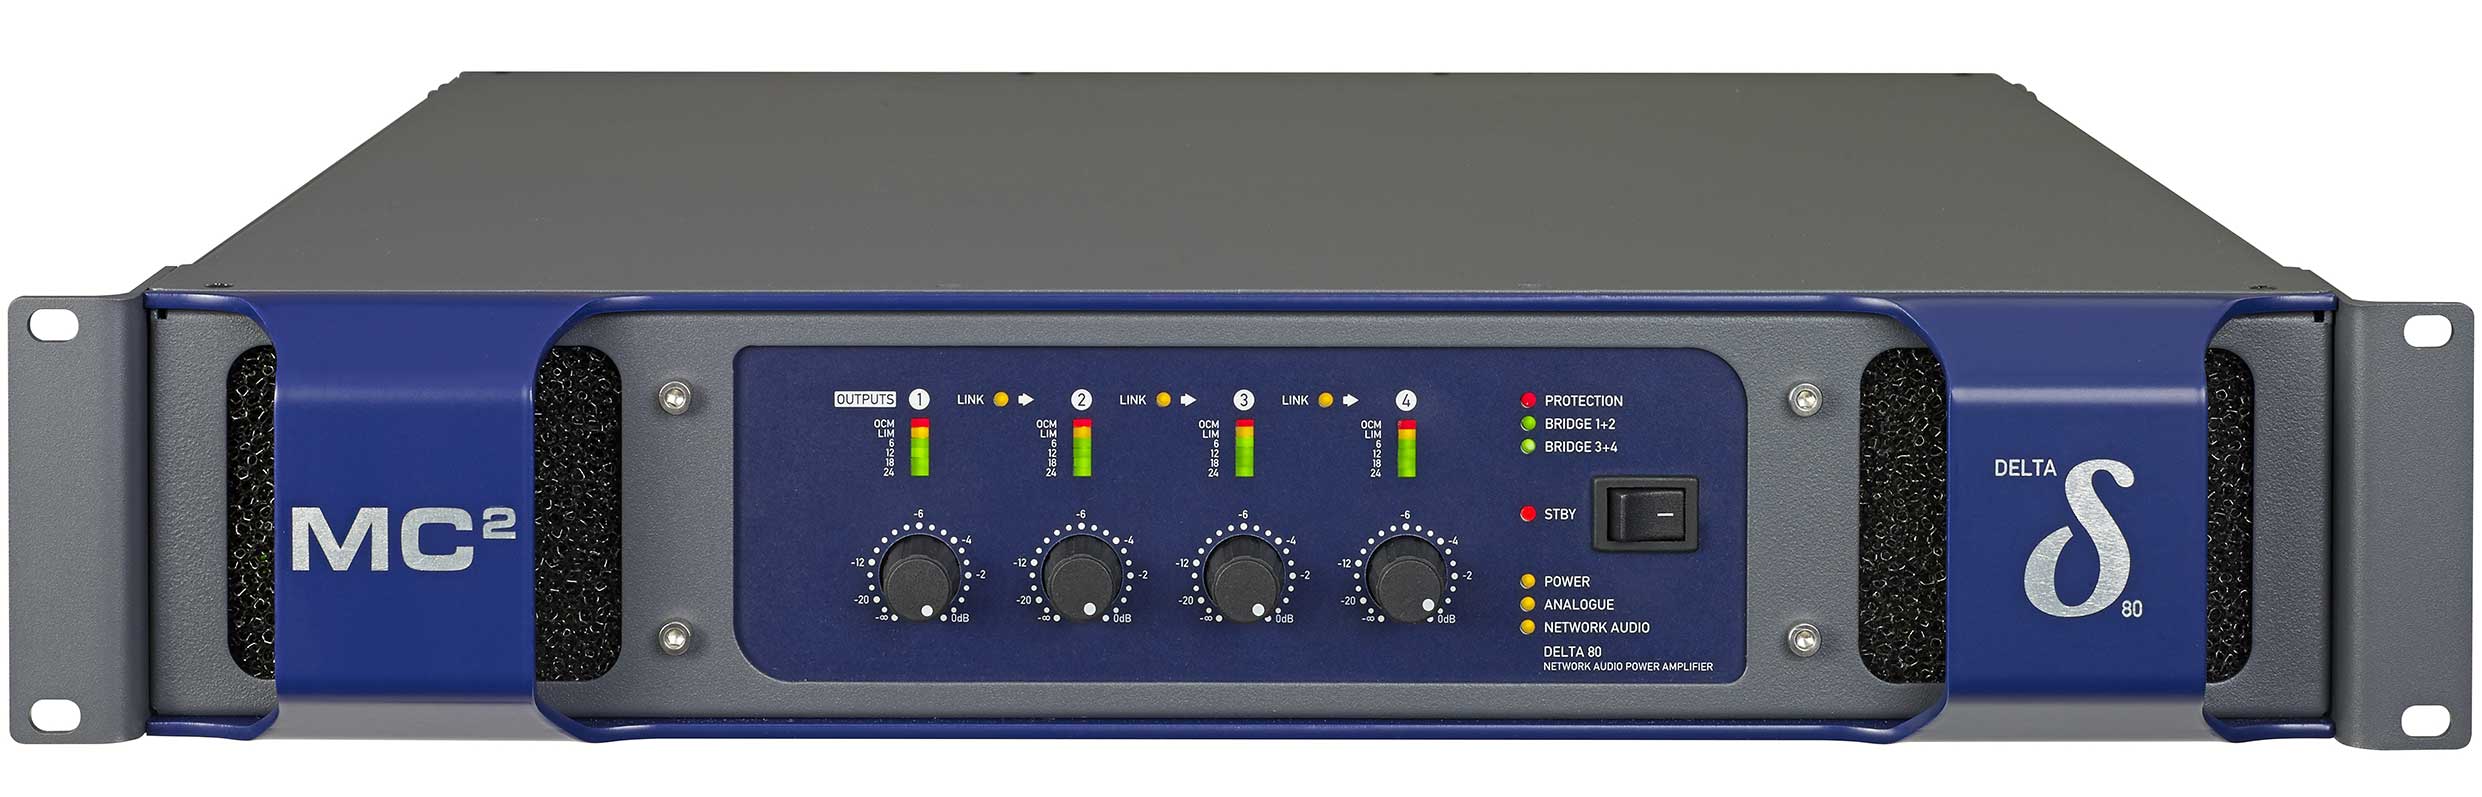 Delta-Series Amplifiers